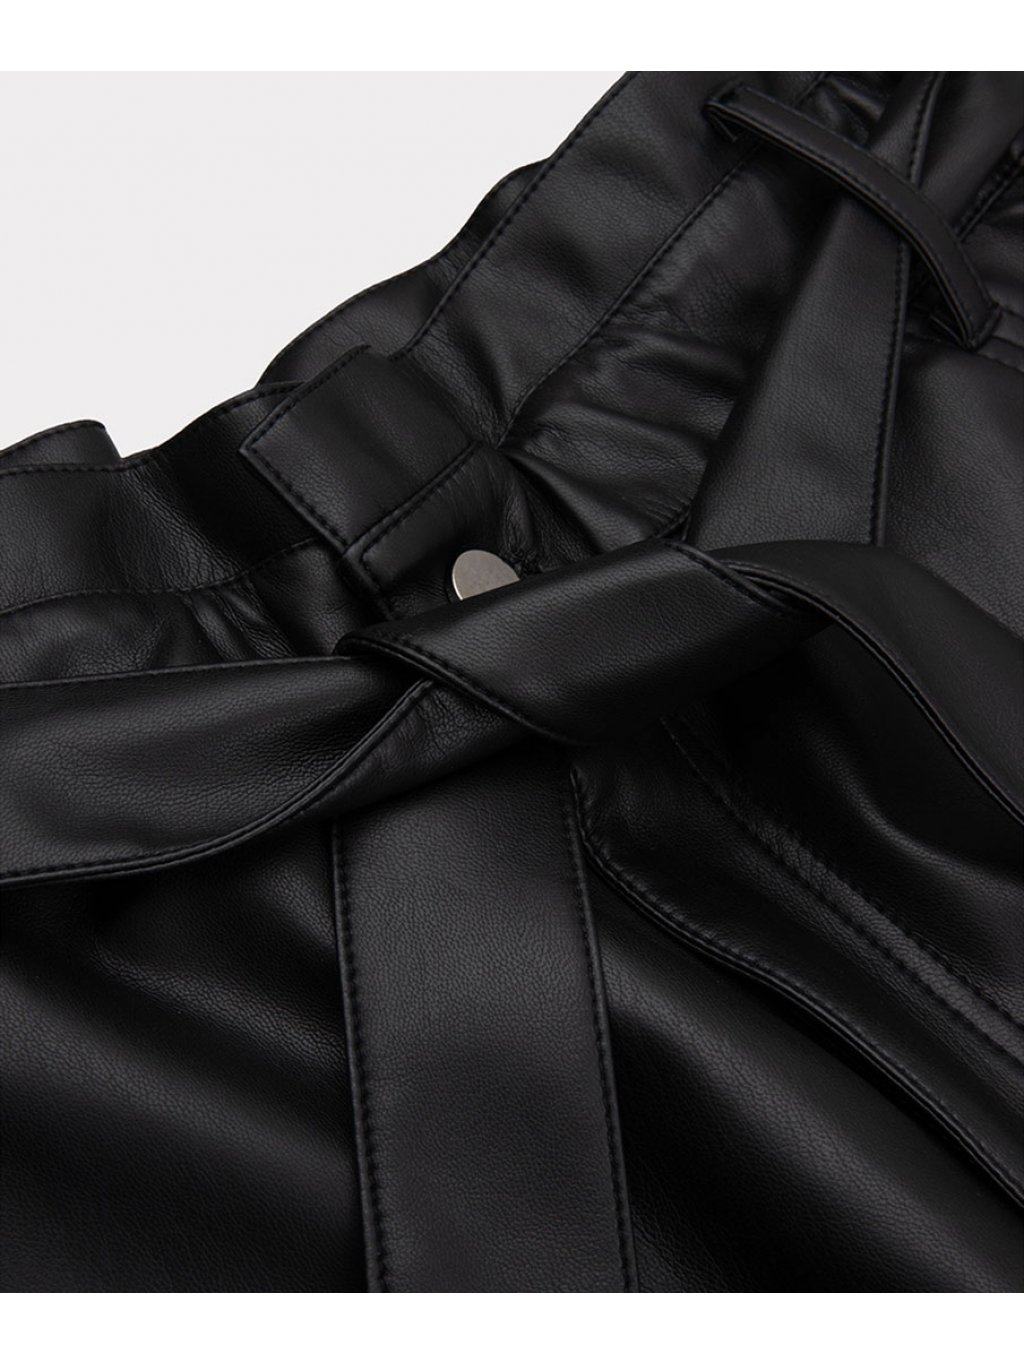 Kalhoty Esqualo 11503 černé eko kůže s řasením